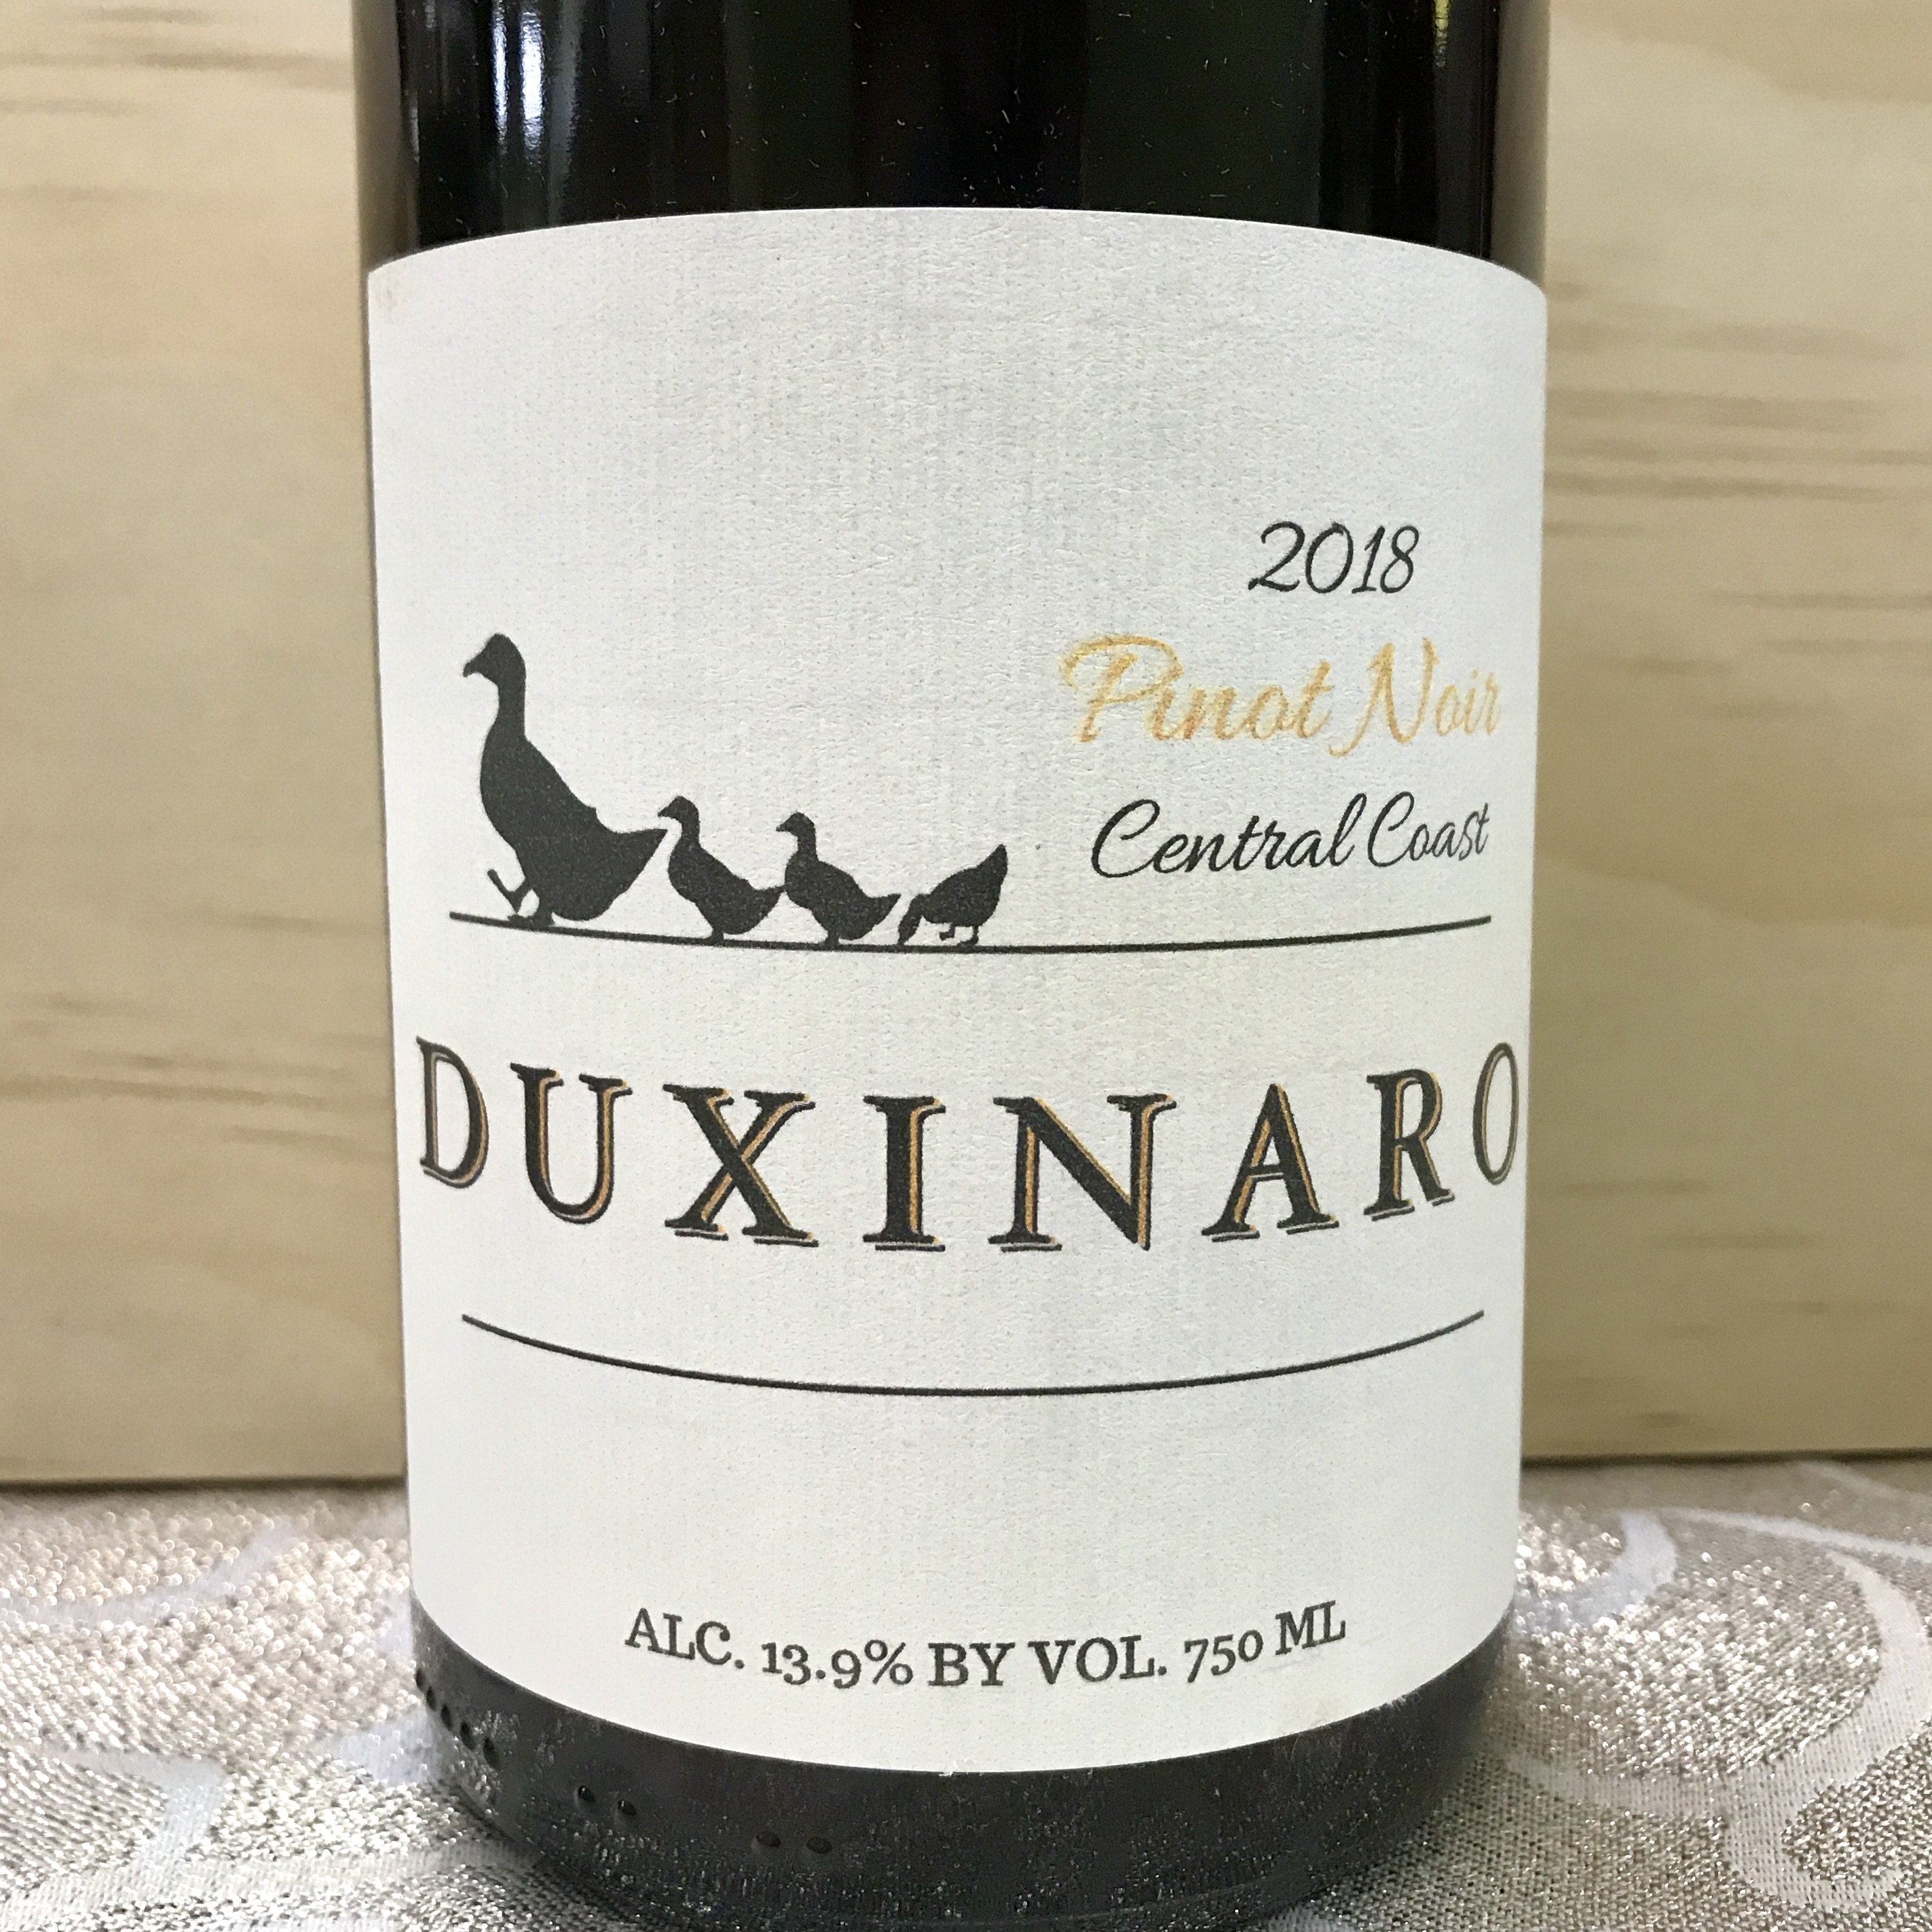 Duxinaro Pinot Noir Central Coast 2018